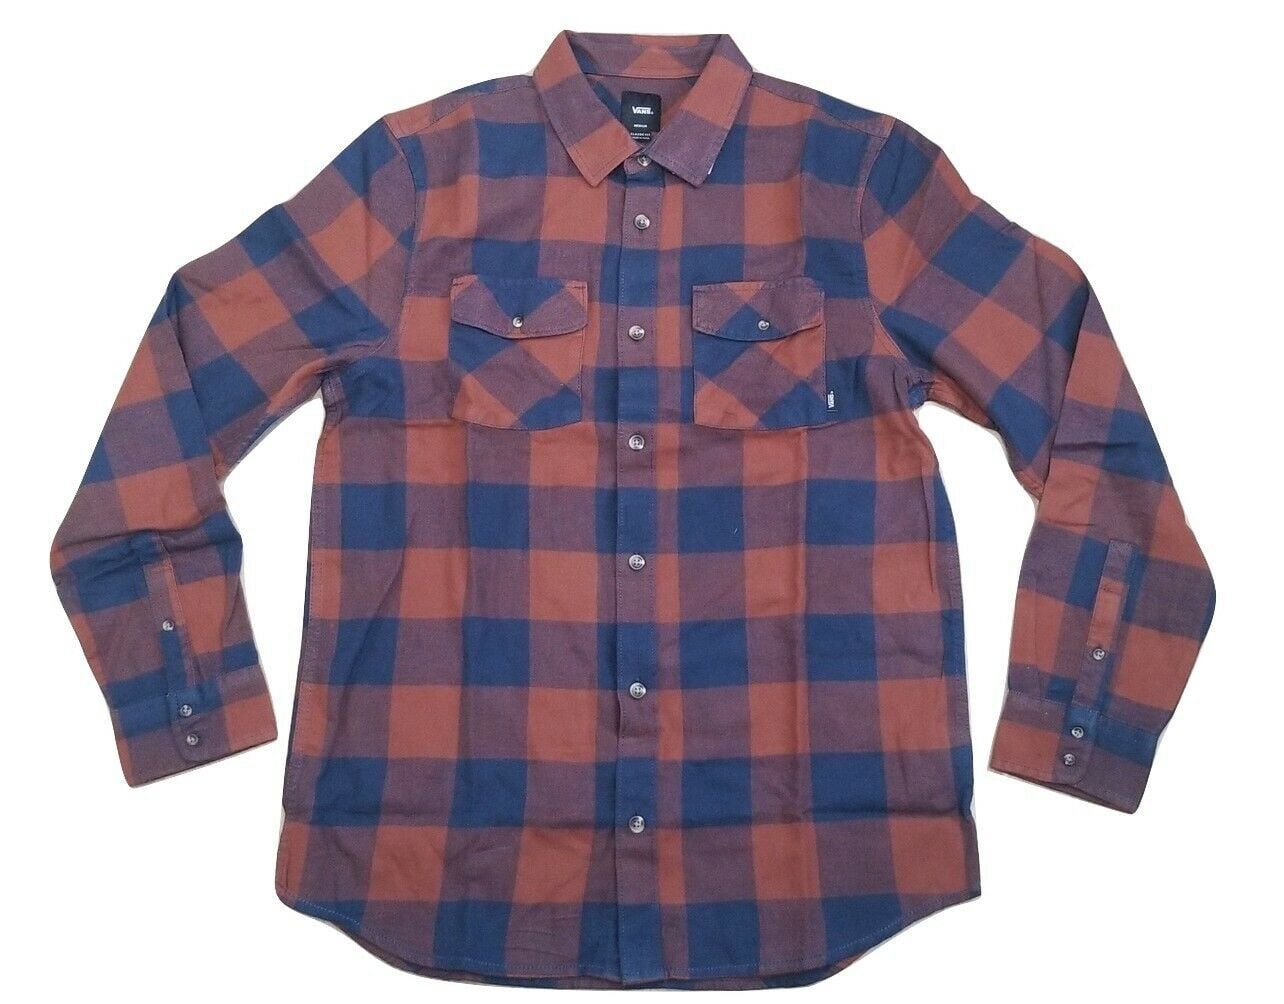 Vans Herrington Woven Blue/Brown Men's Classic Fit Flannel Shirt Size M ...